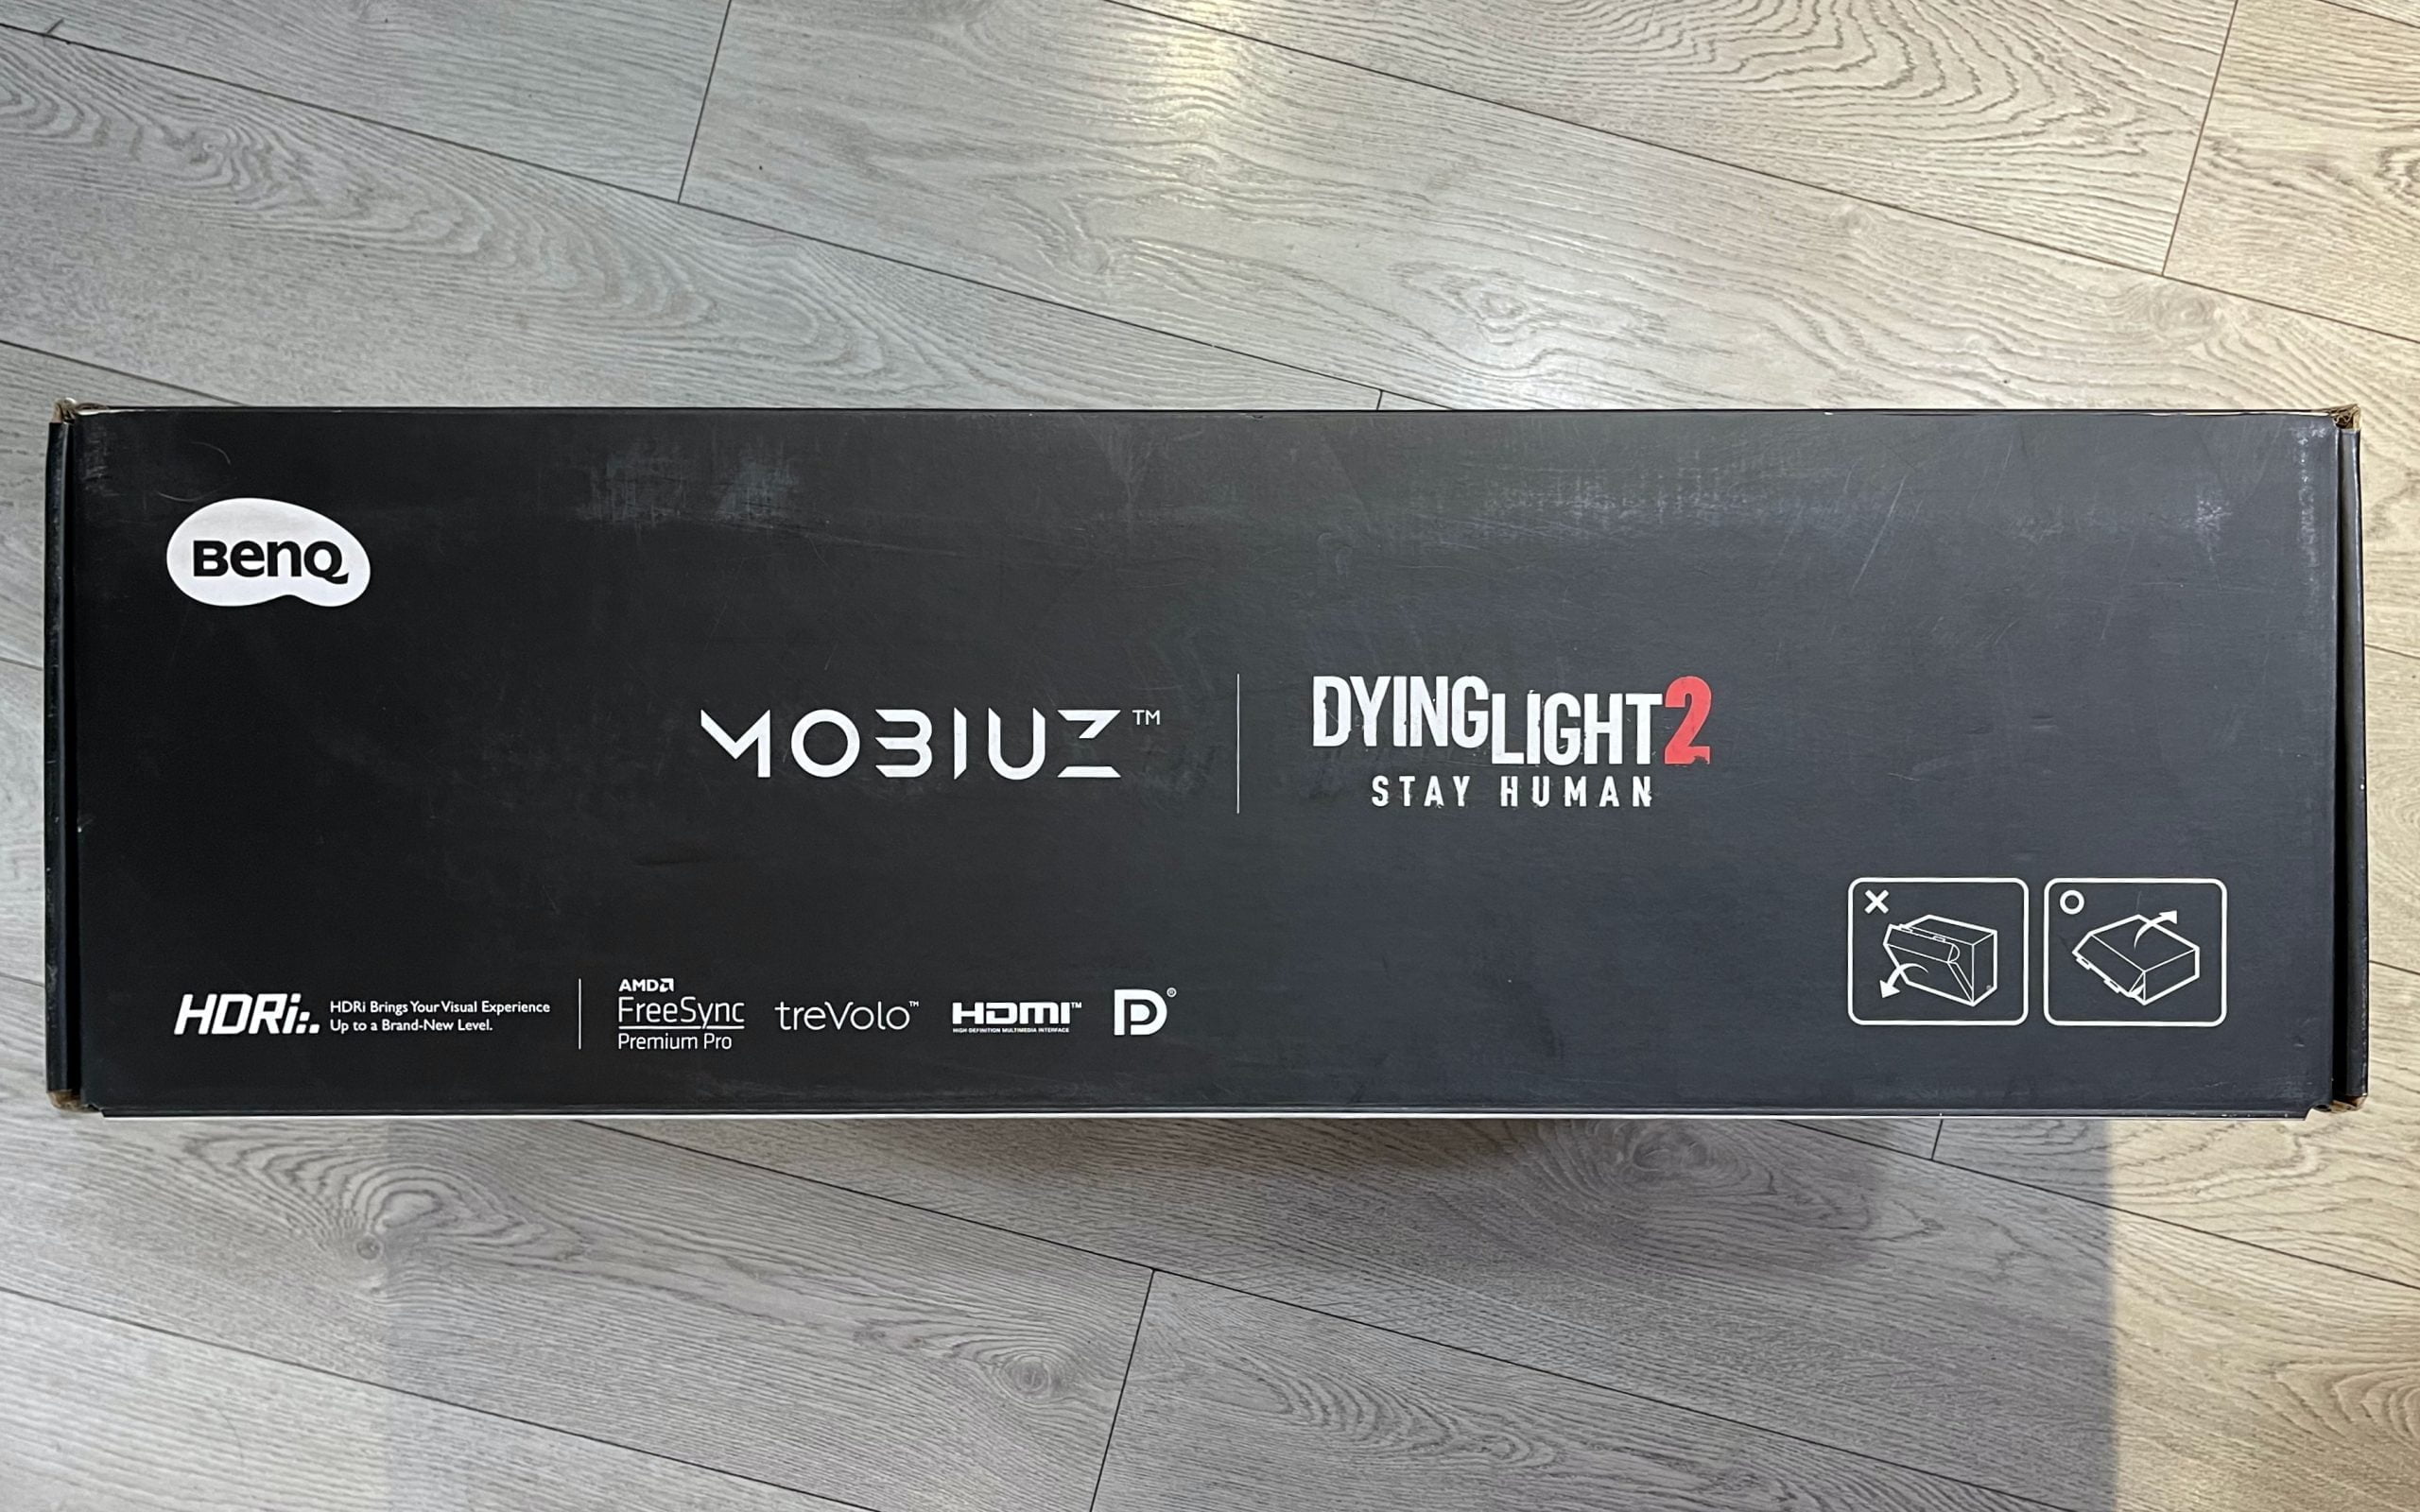 [Trên tay] BenQ MOBIUZ EX3210R Dyling Light 2 – Độ cong khủng 1000R, nhiều công nghệ hình ảnh hữu ích, dải loa TreVolo ấn tượng - Image 3